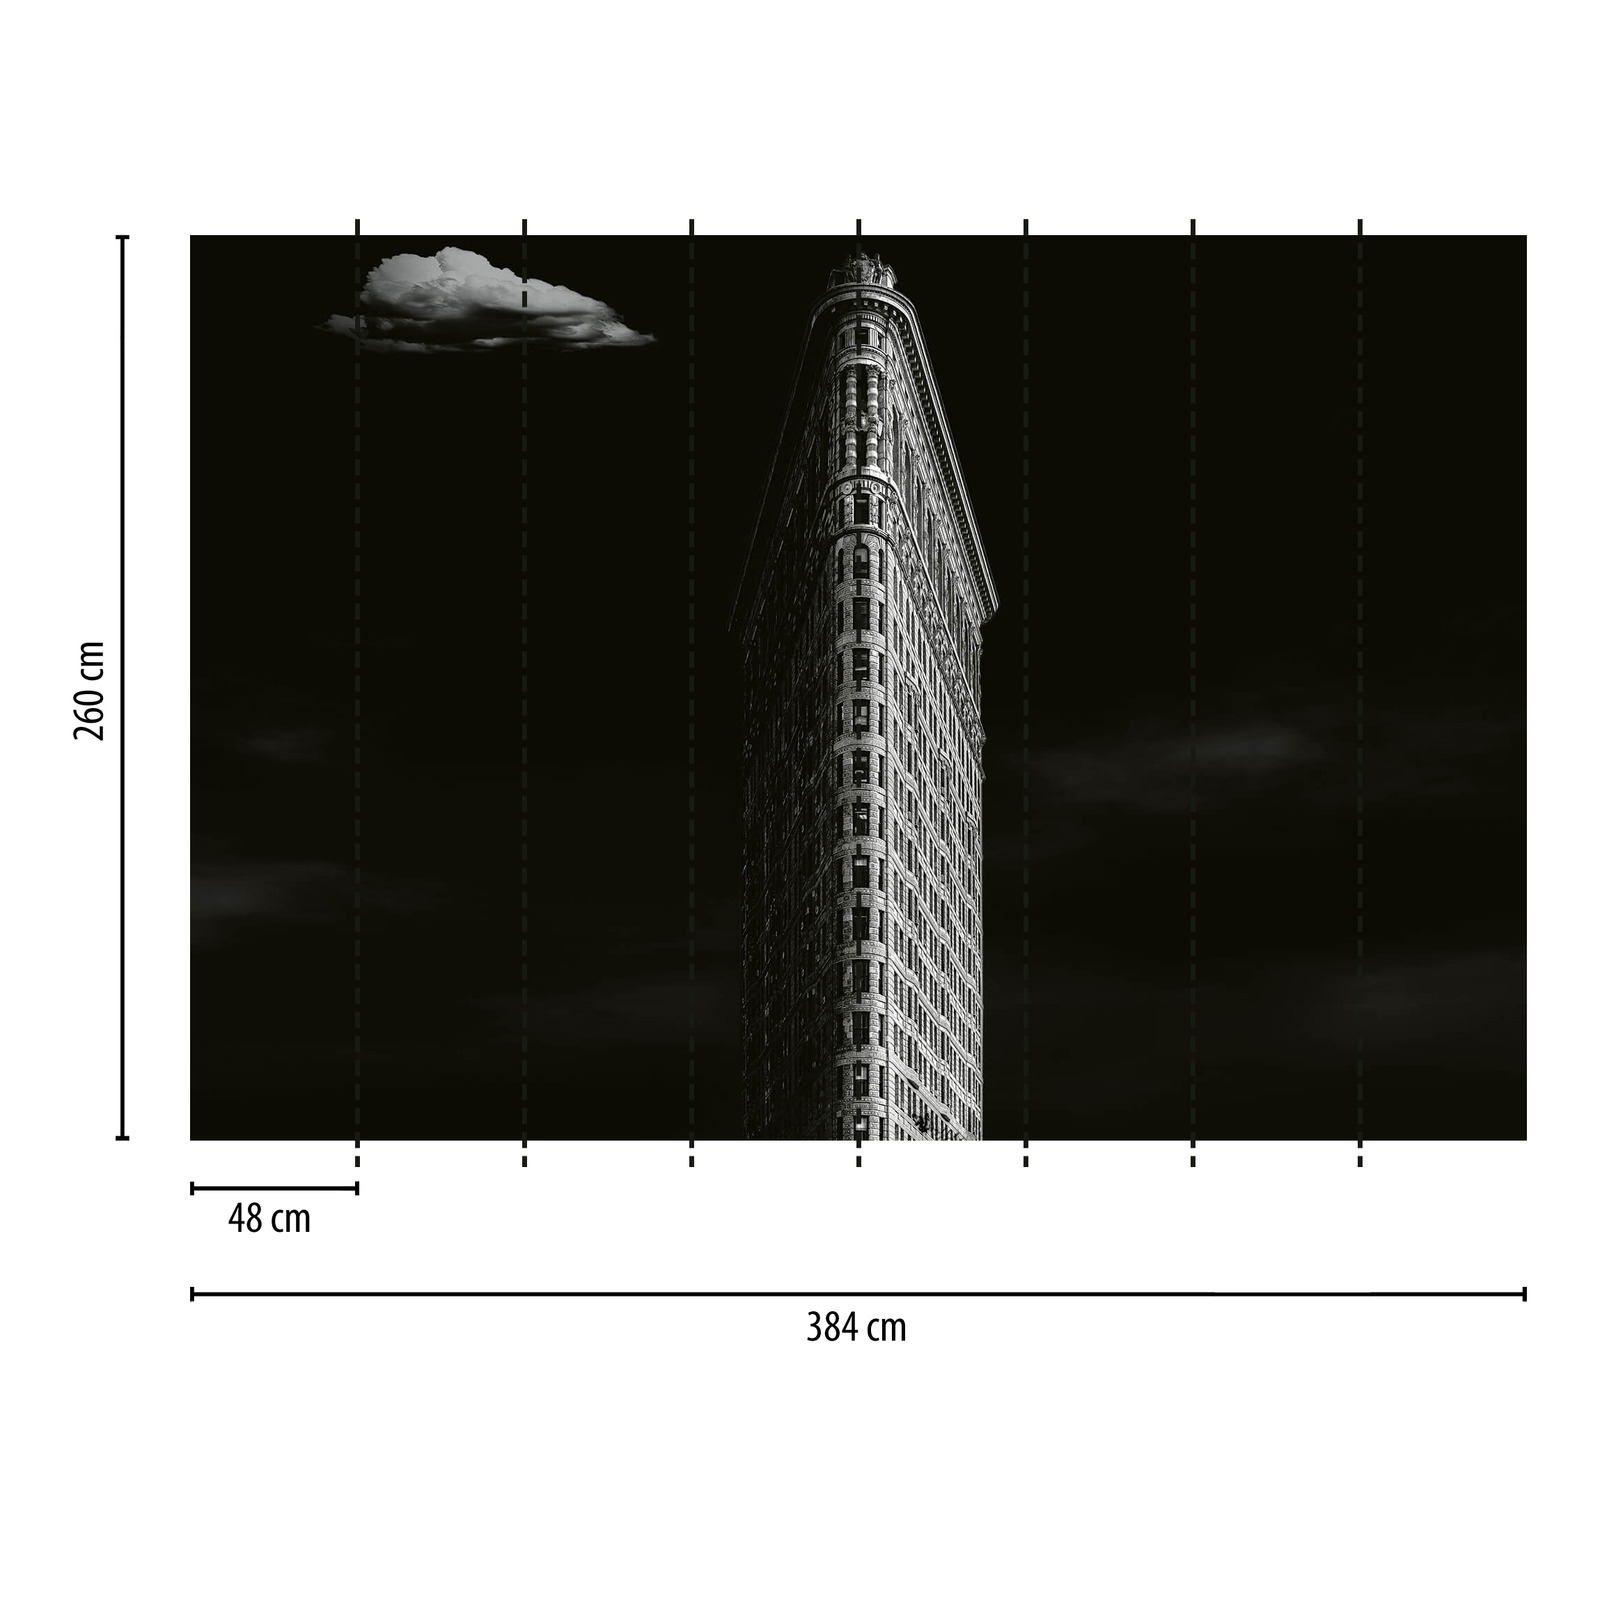             New York Skyscraper Behang - Zwart, Wit, Grijs
        